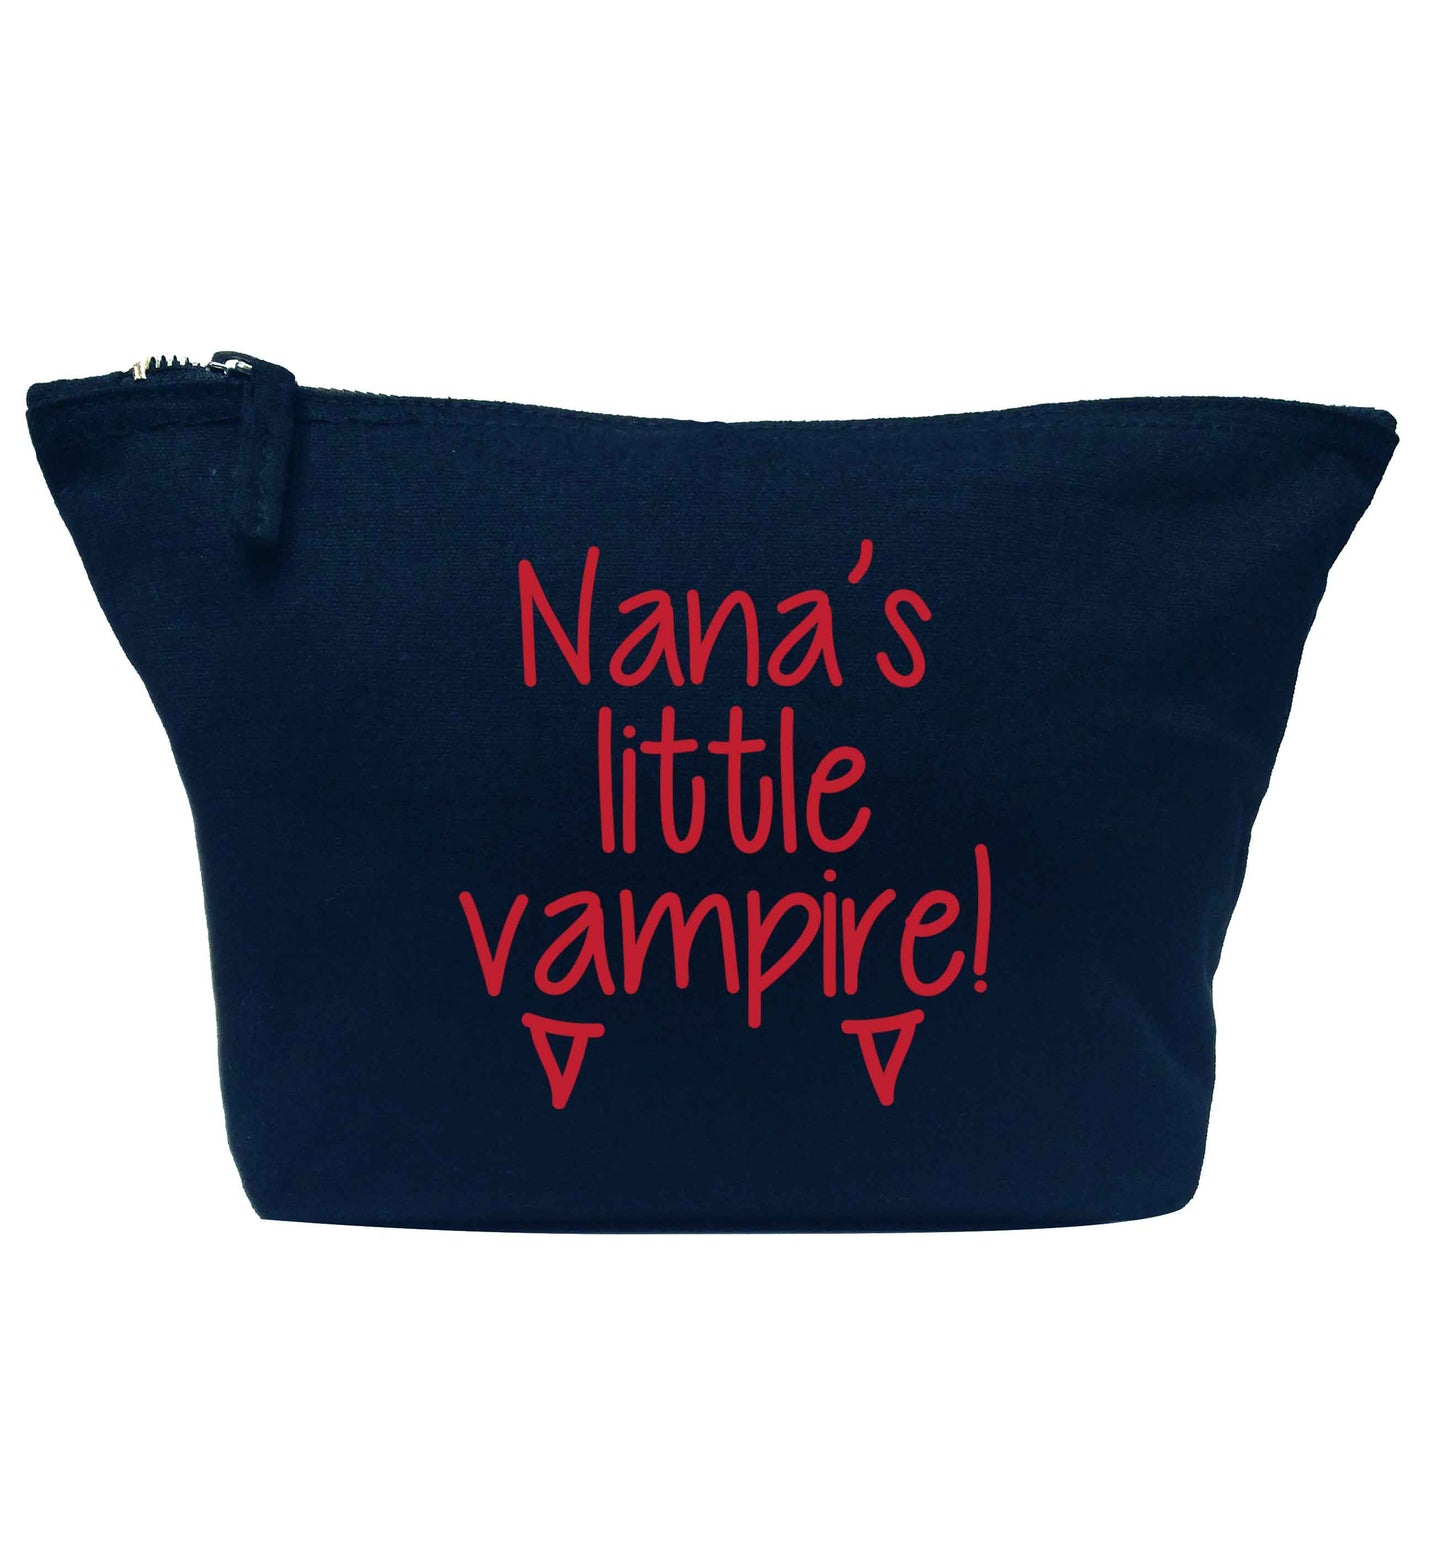 Nana's little vampire navy makeup bag